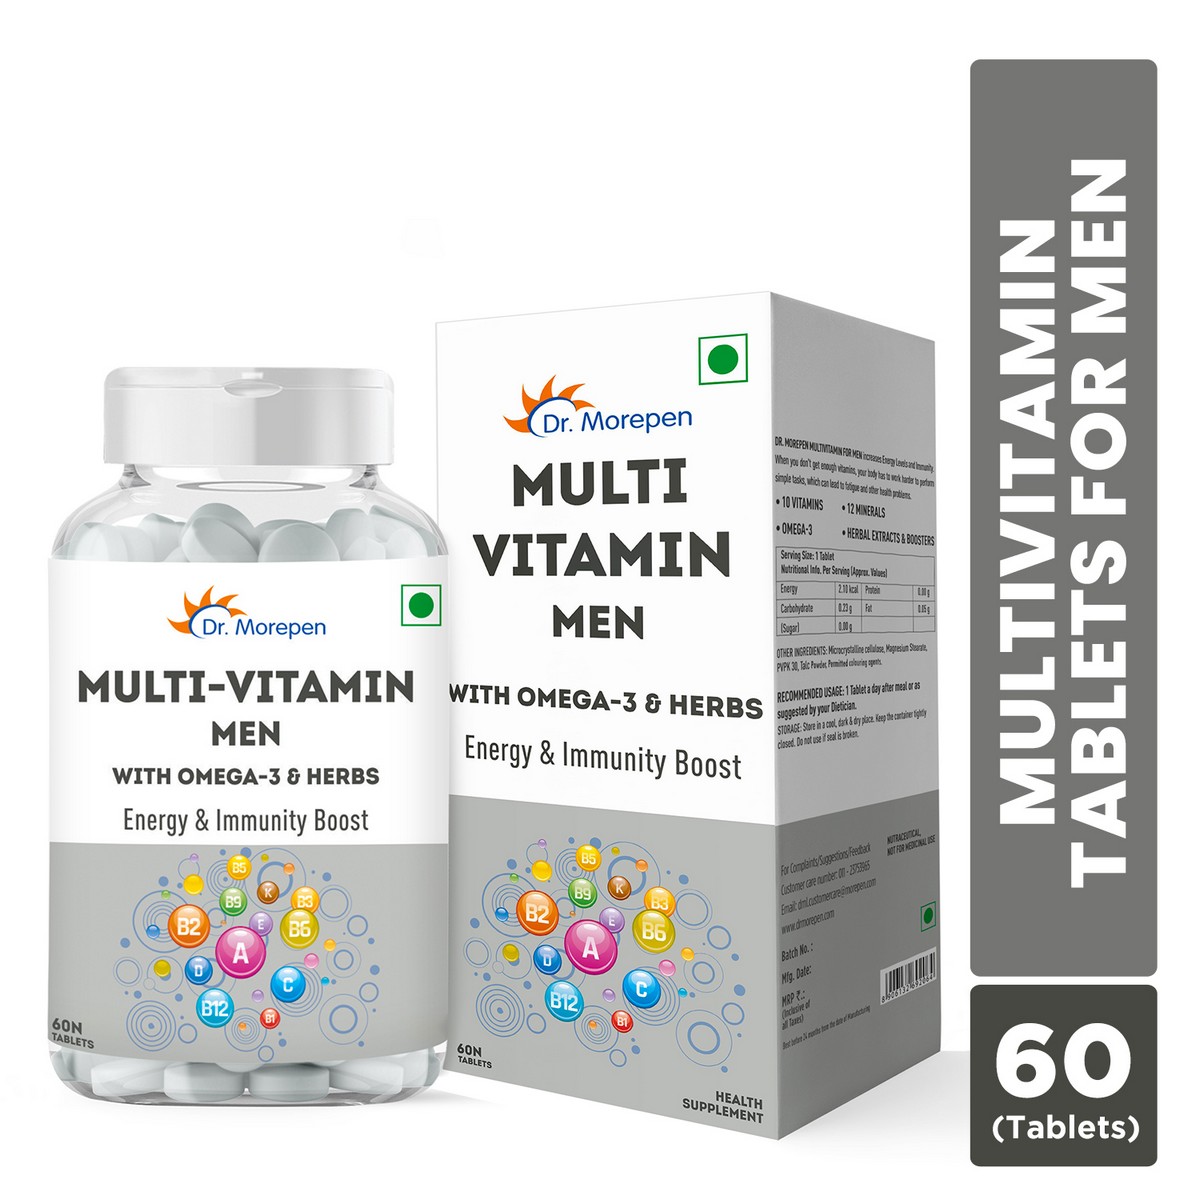 Dr. Morepen Multivitamin Men Tablets Pack of 2